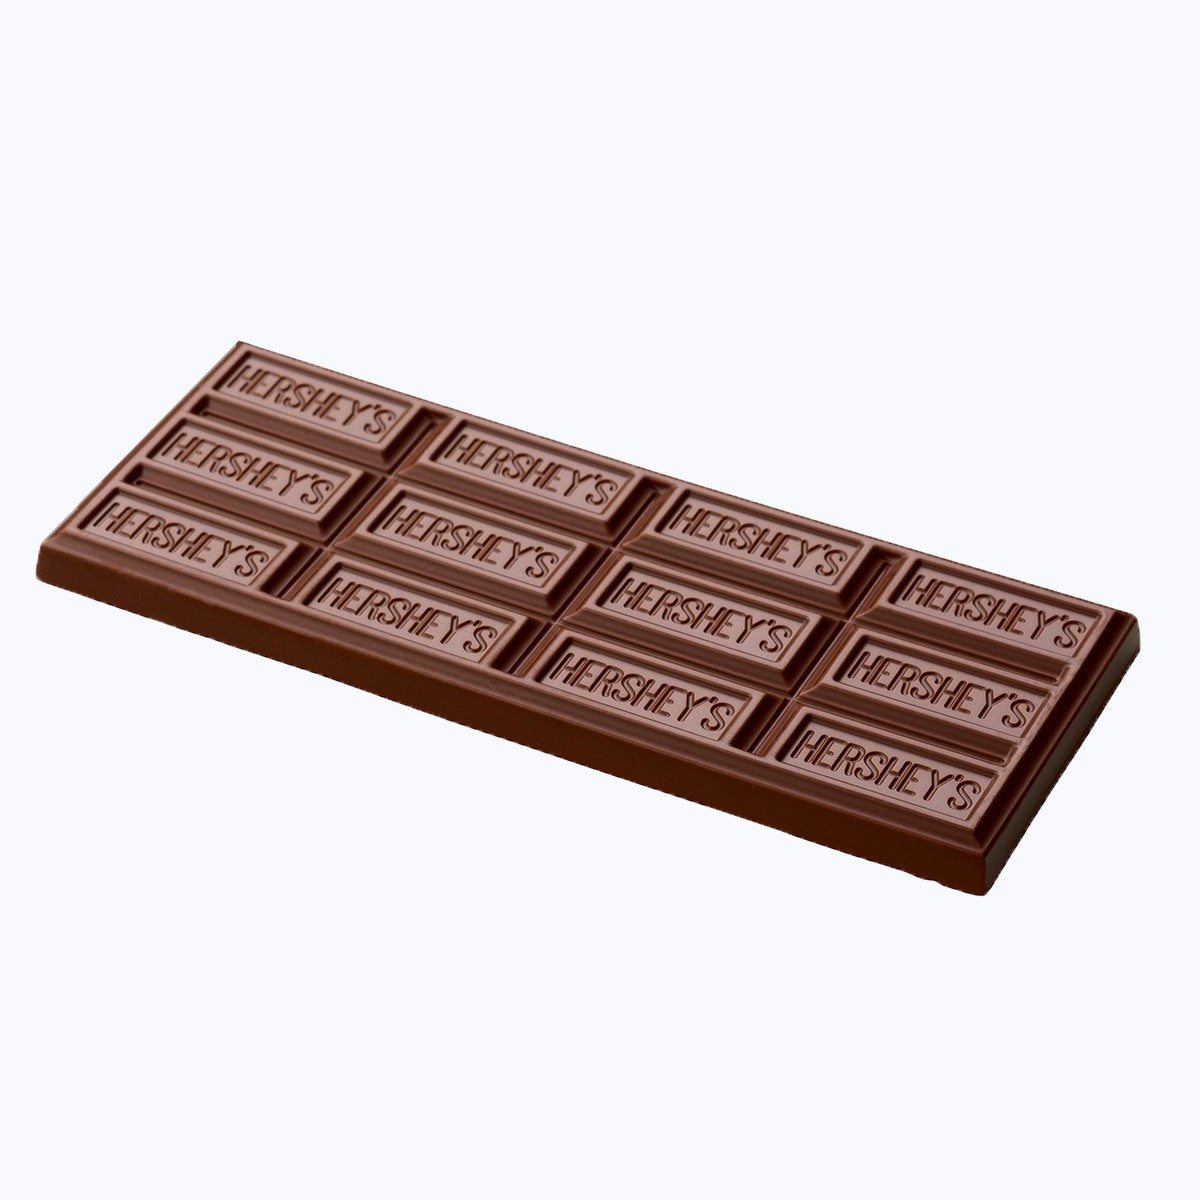 Une tablette de chocolat au lait sur fond blanc avec des inscriptions « Hershey’s » sur chaque carré